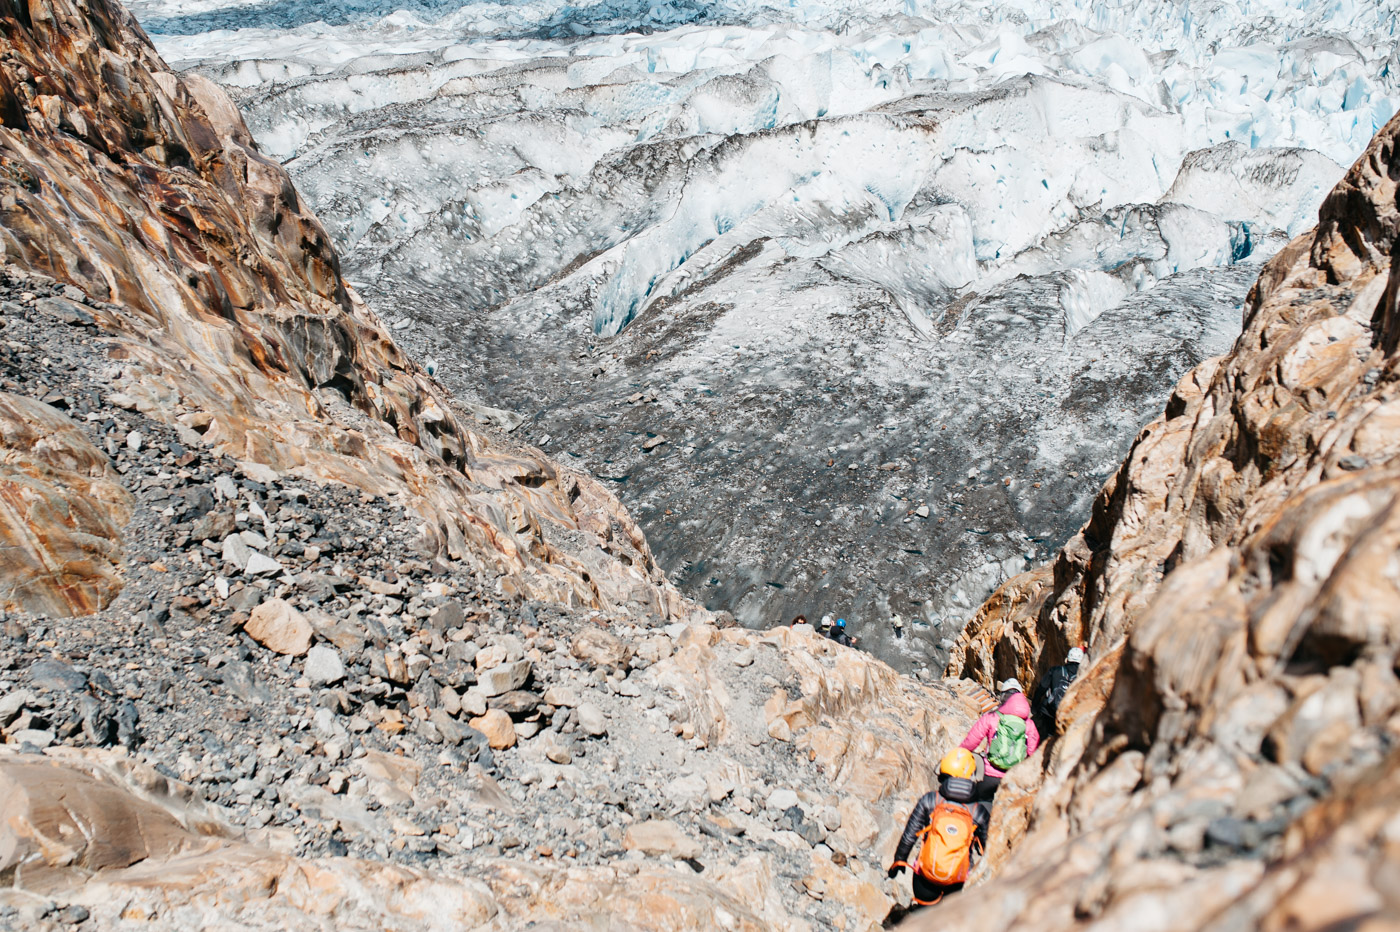 Trekking to Viedma Glacier on steep cliffs